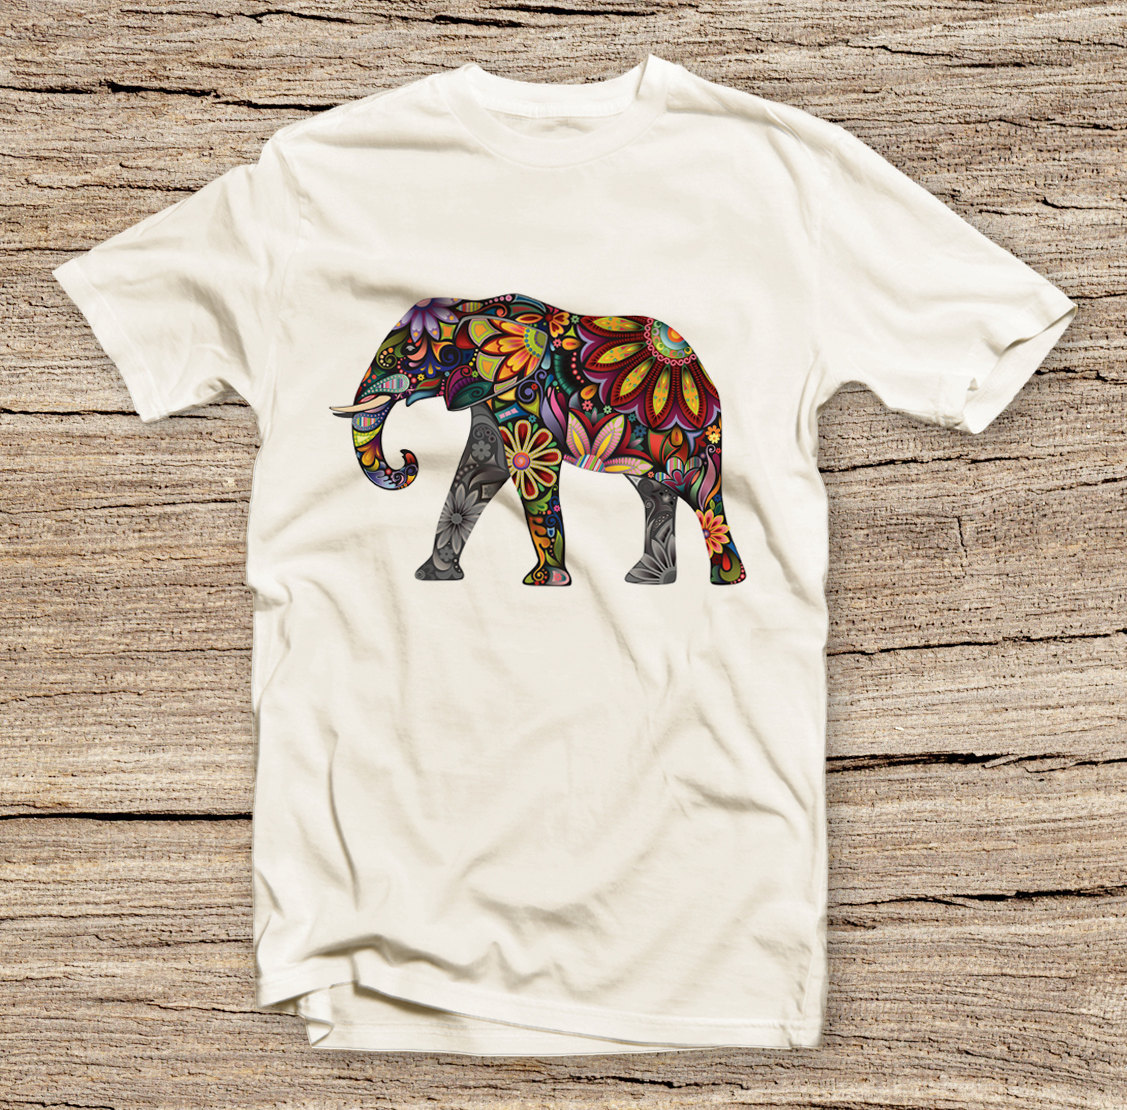 Pts-161 Vintage Elephant Shirt, Abstract Elephant, World Traveler, India Travel, Unisex T Shirt Men Shirt, Fashion Style Printed T-shirt